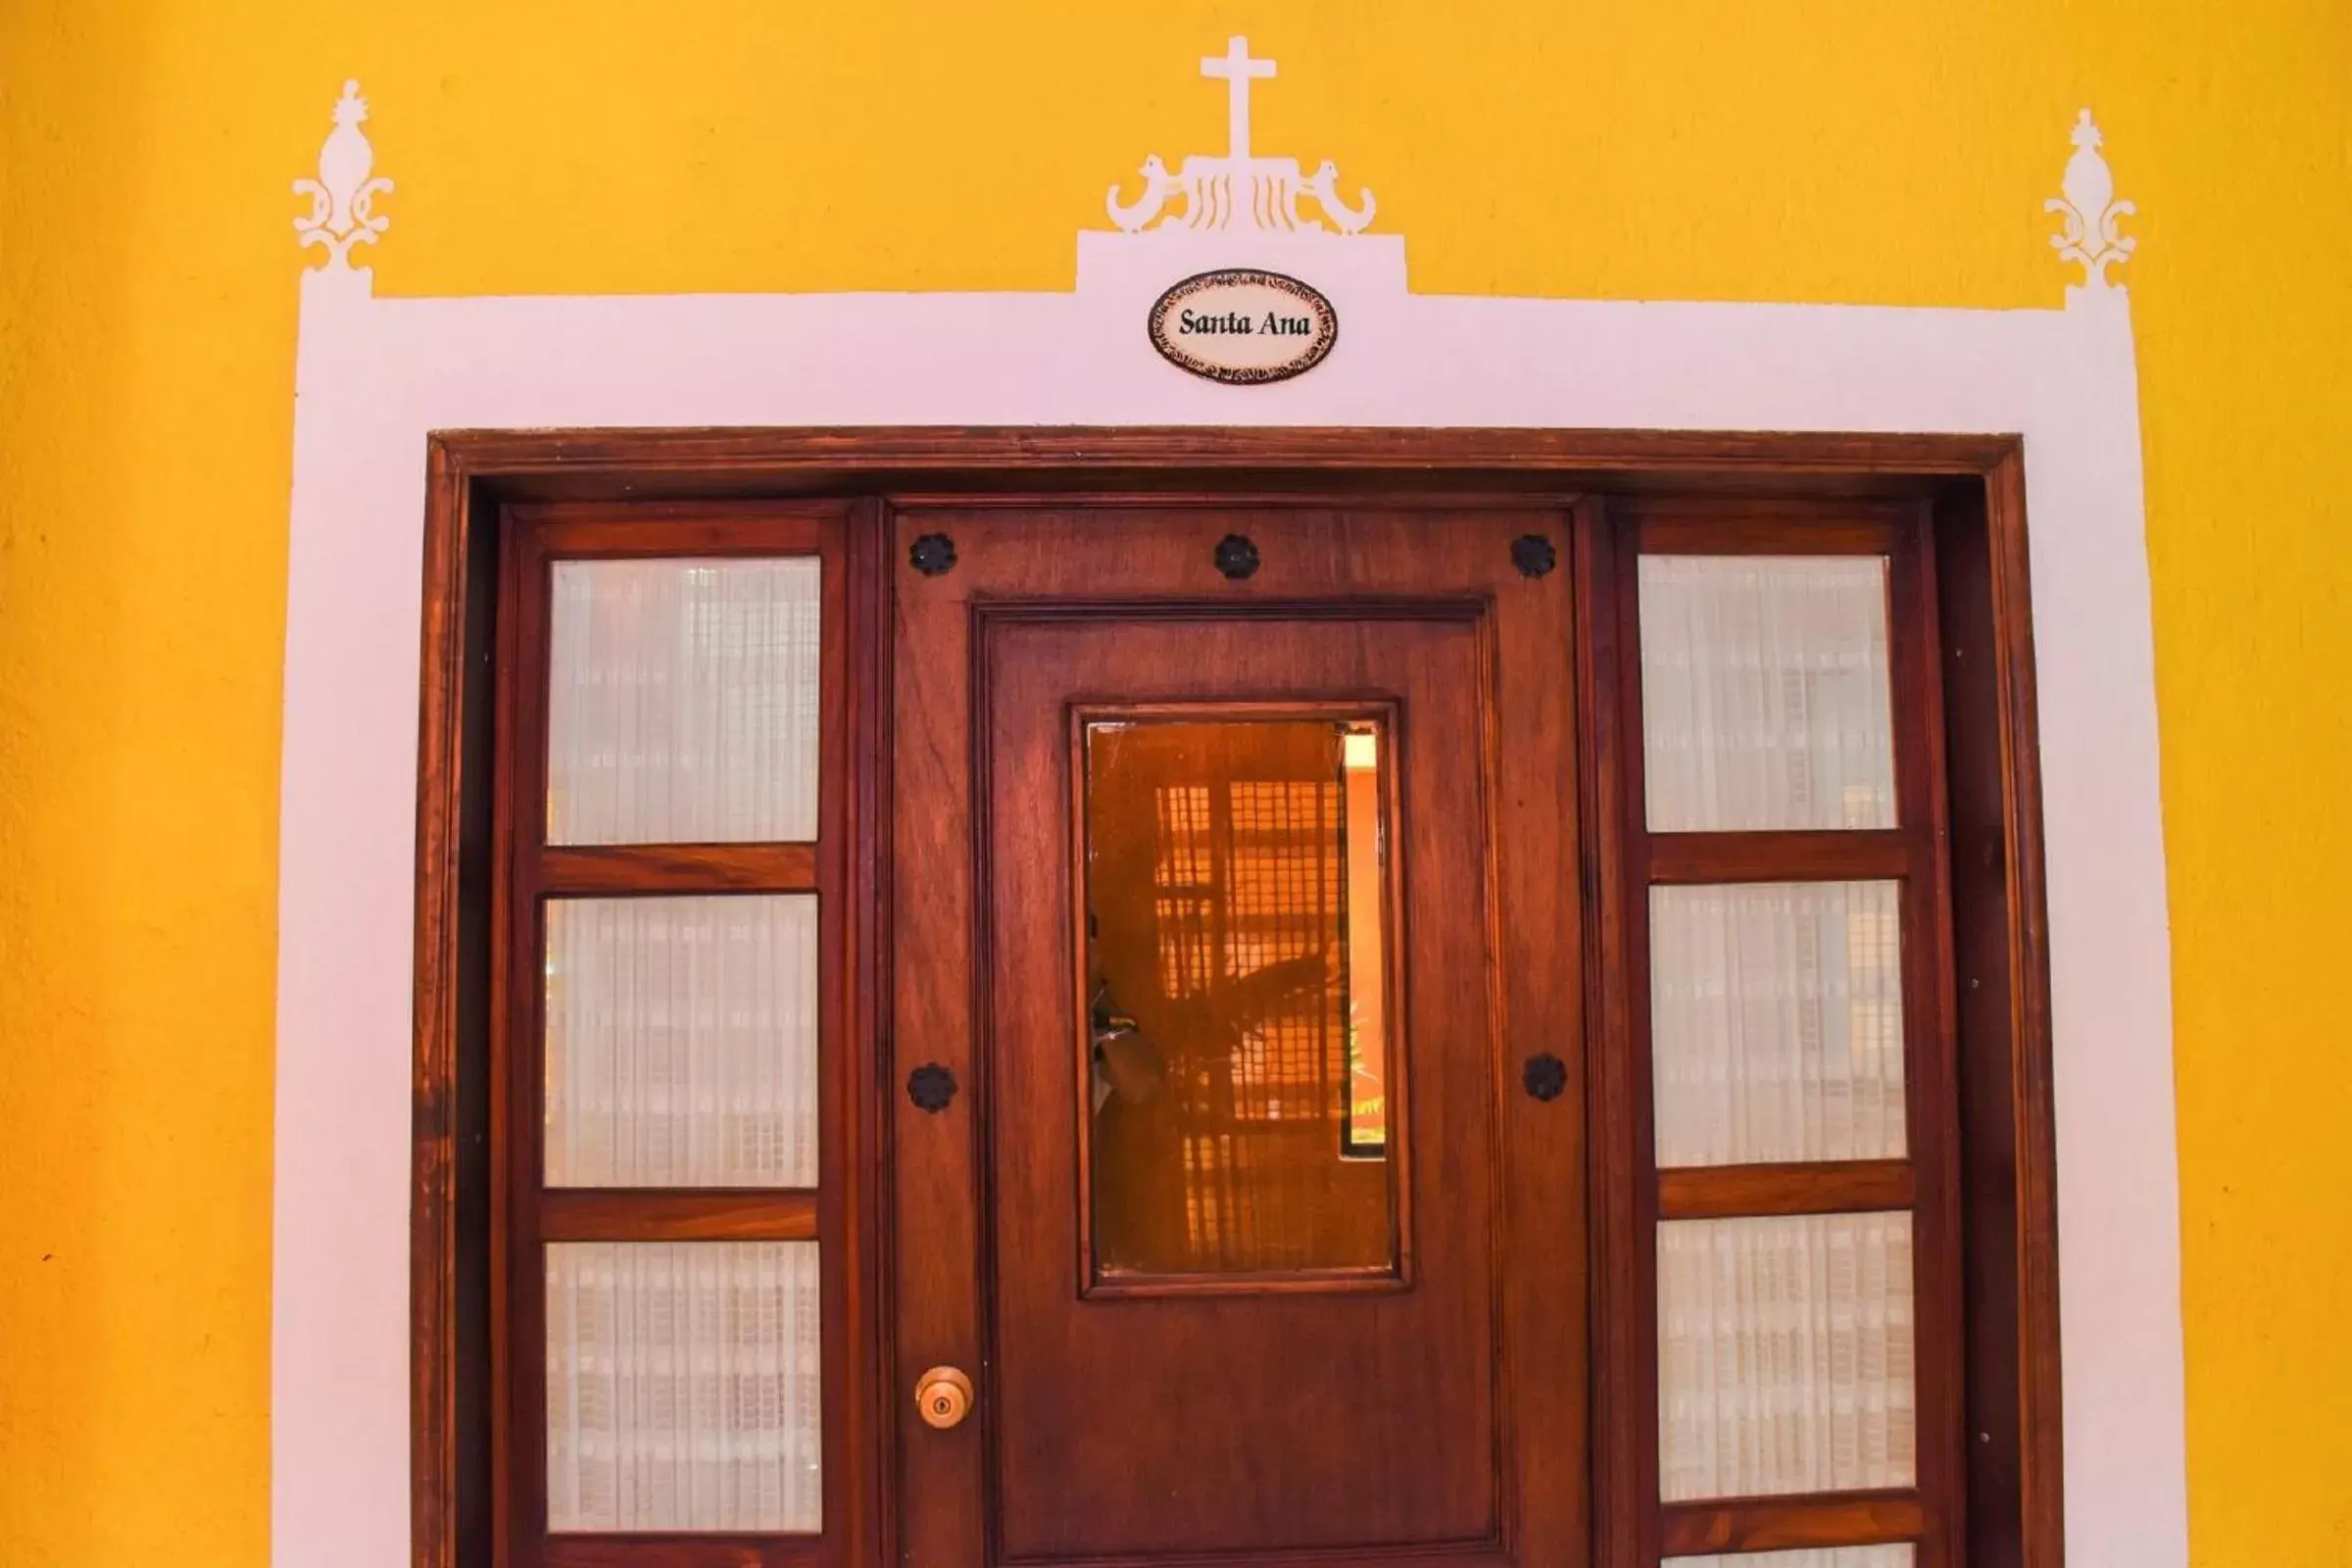 Facade/entrance in Casa Tia Micha